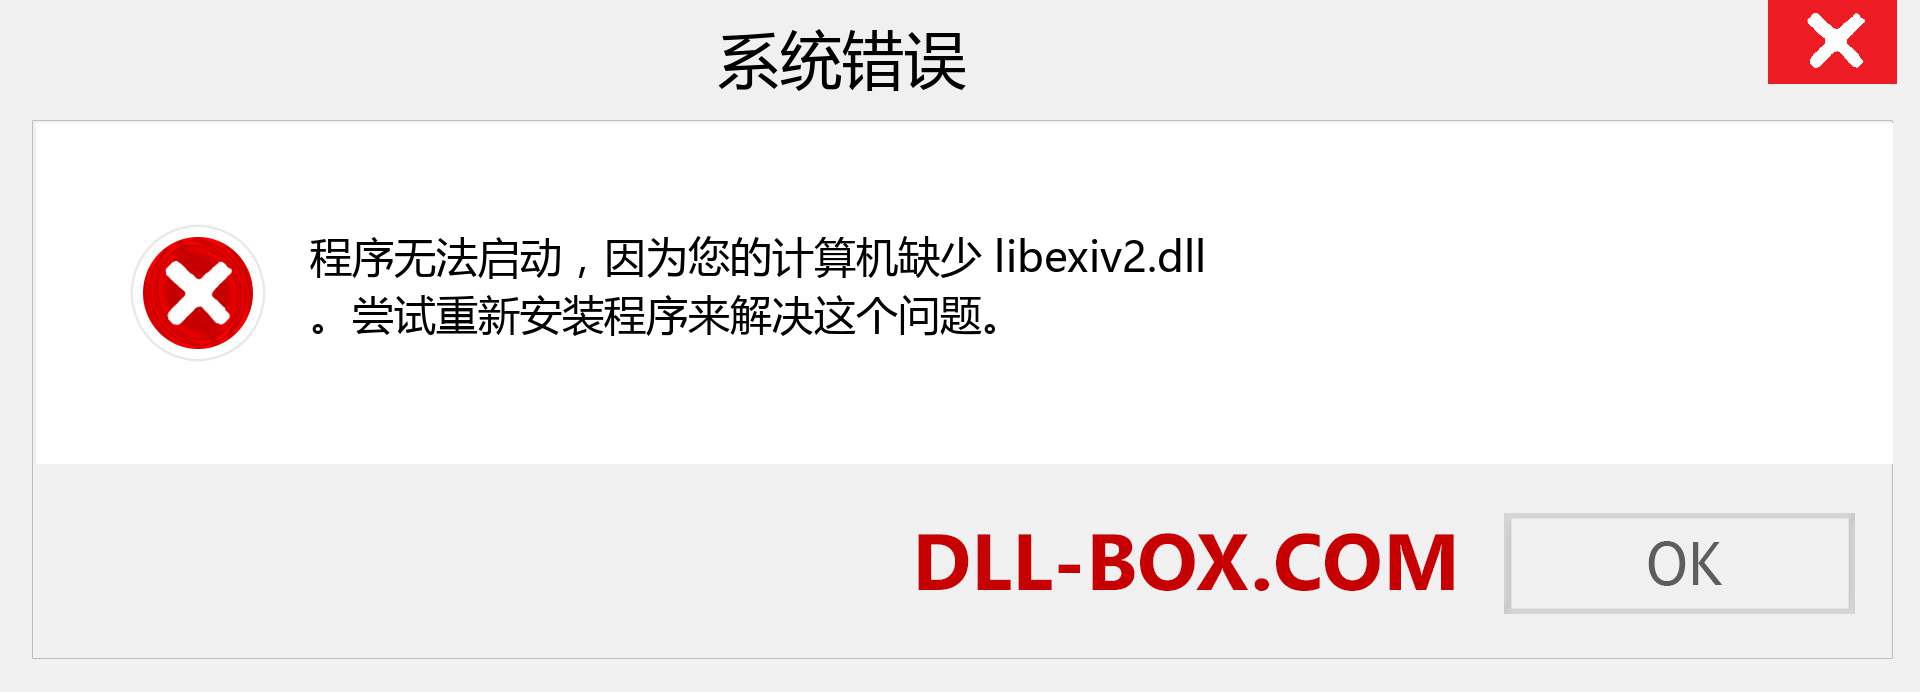 libexiv2.dll 文件丢失？。 适用于 Windows 7、8、10 的下载 - 修复 Windows、照片、图像上的 libexiv2 dll 丢失错误